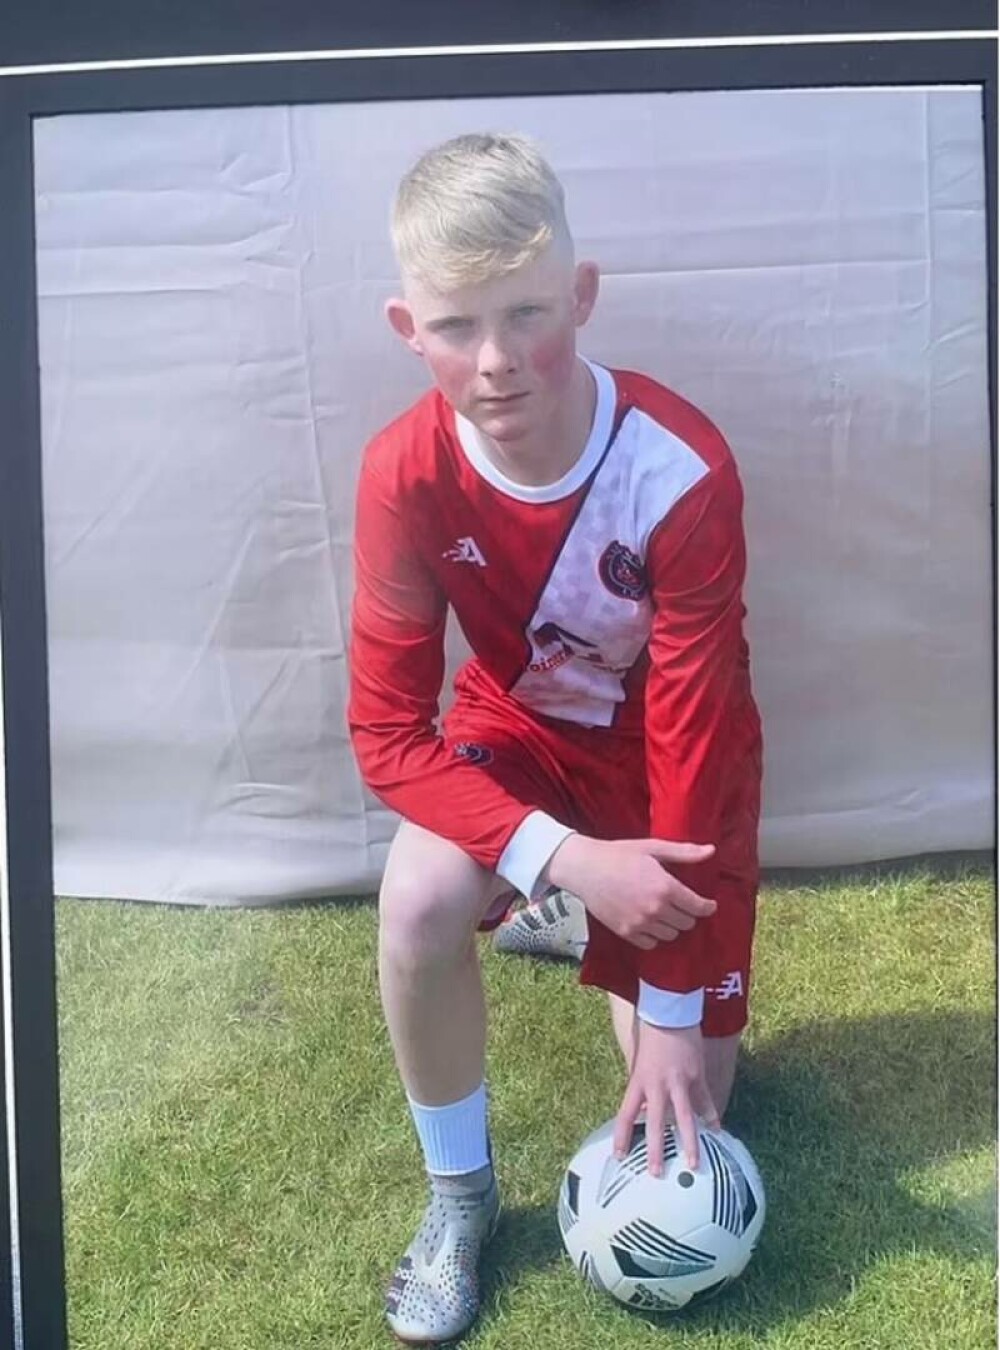 Un băiat de 15 ani a murit în timp ce se juca fotbal la școală, sub privirile îngrozite ale colegilor - Imaginea 2